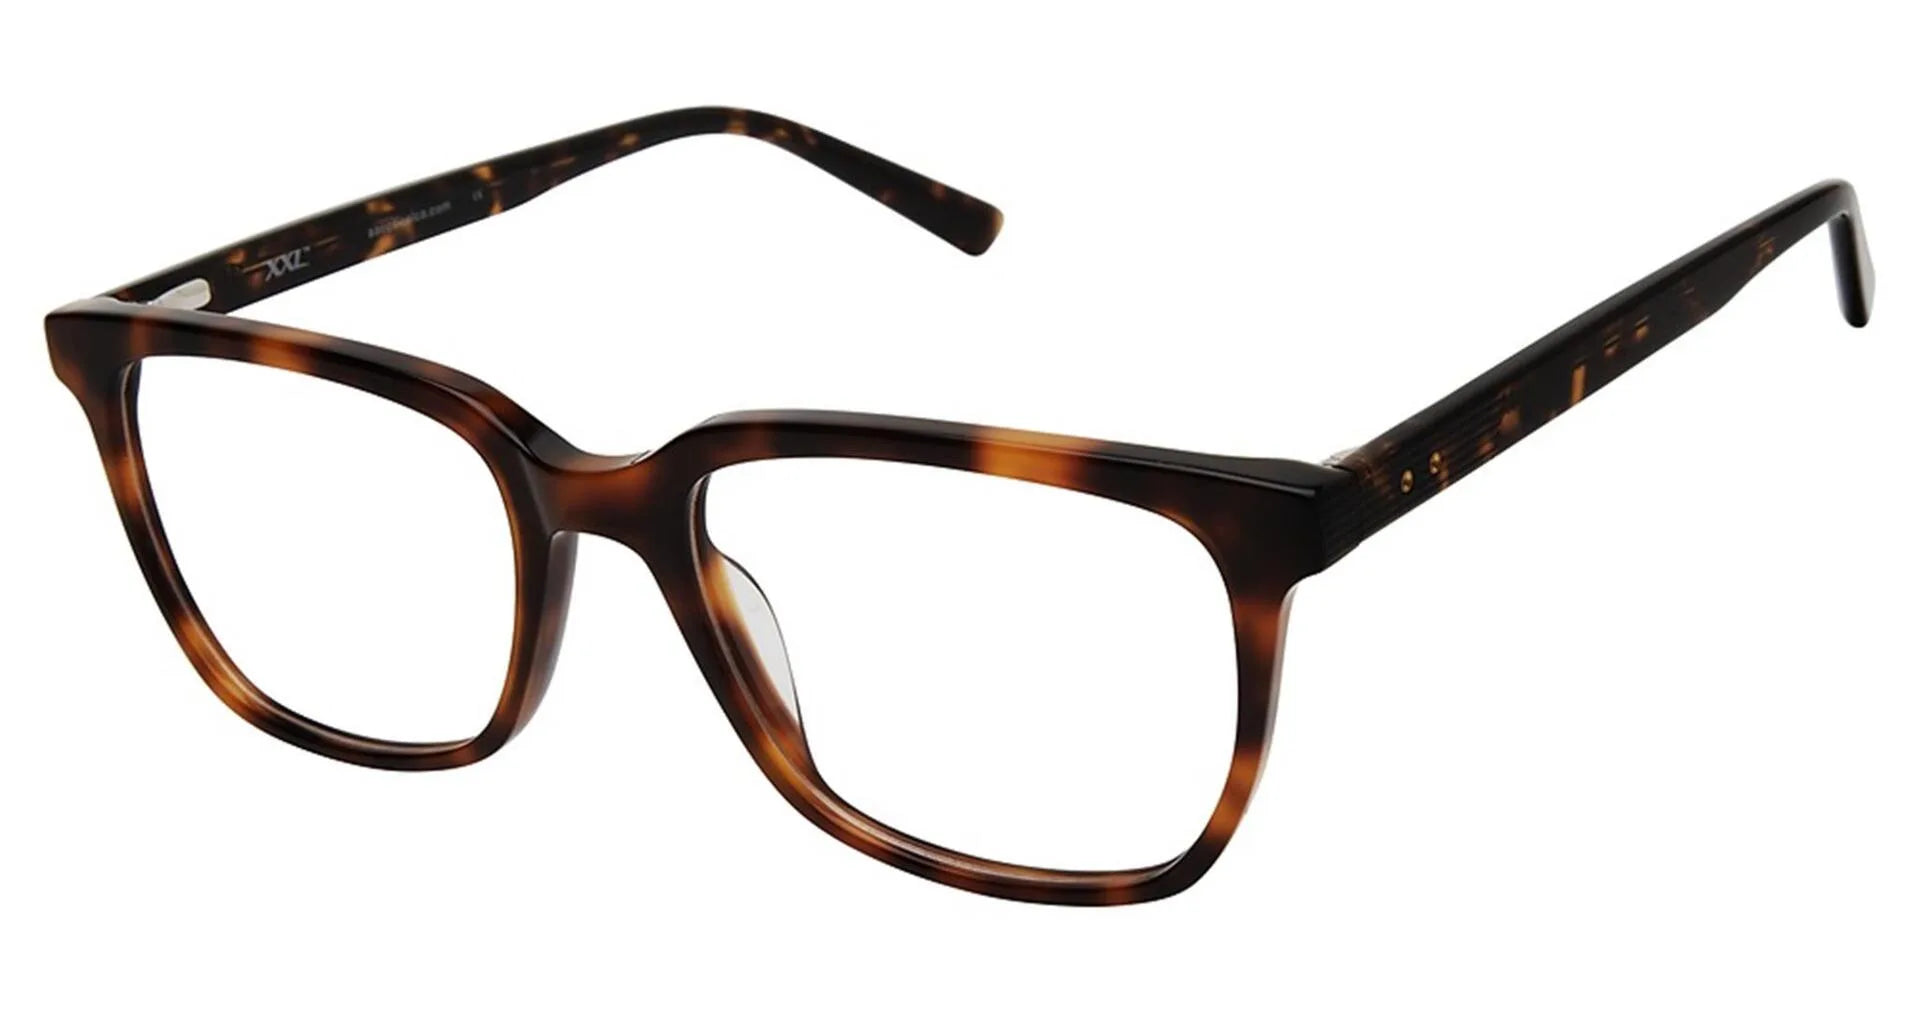 XXL Eyewear Thresher Eyeglasses Tortoise